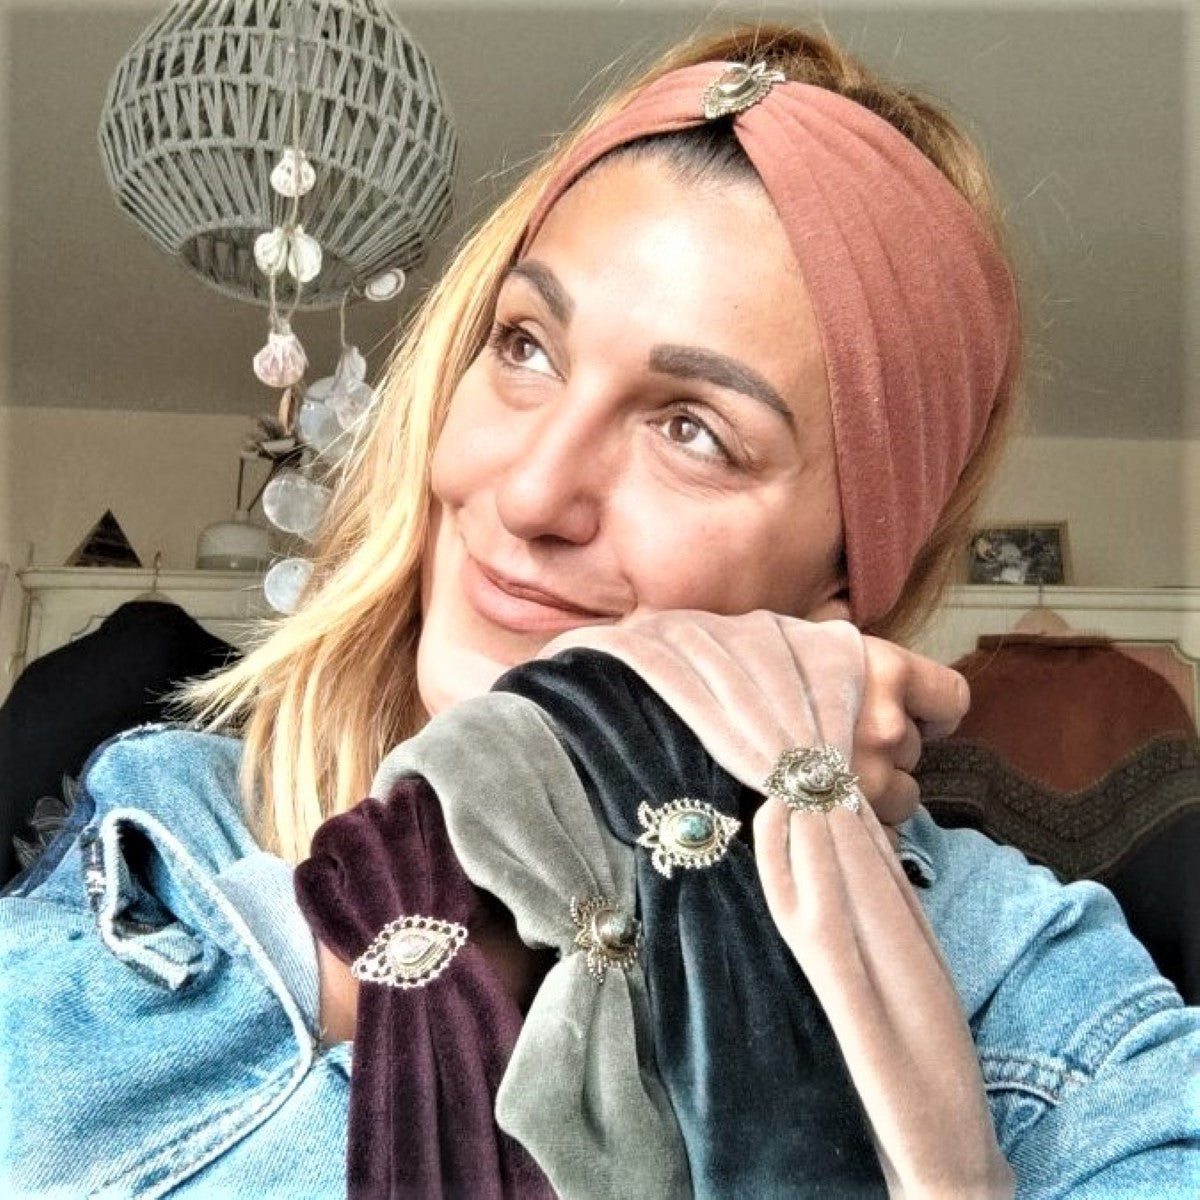 Fibi Haarband aus Samt in Tannengrün - mit Edelsteinen verziert